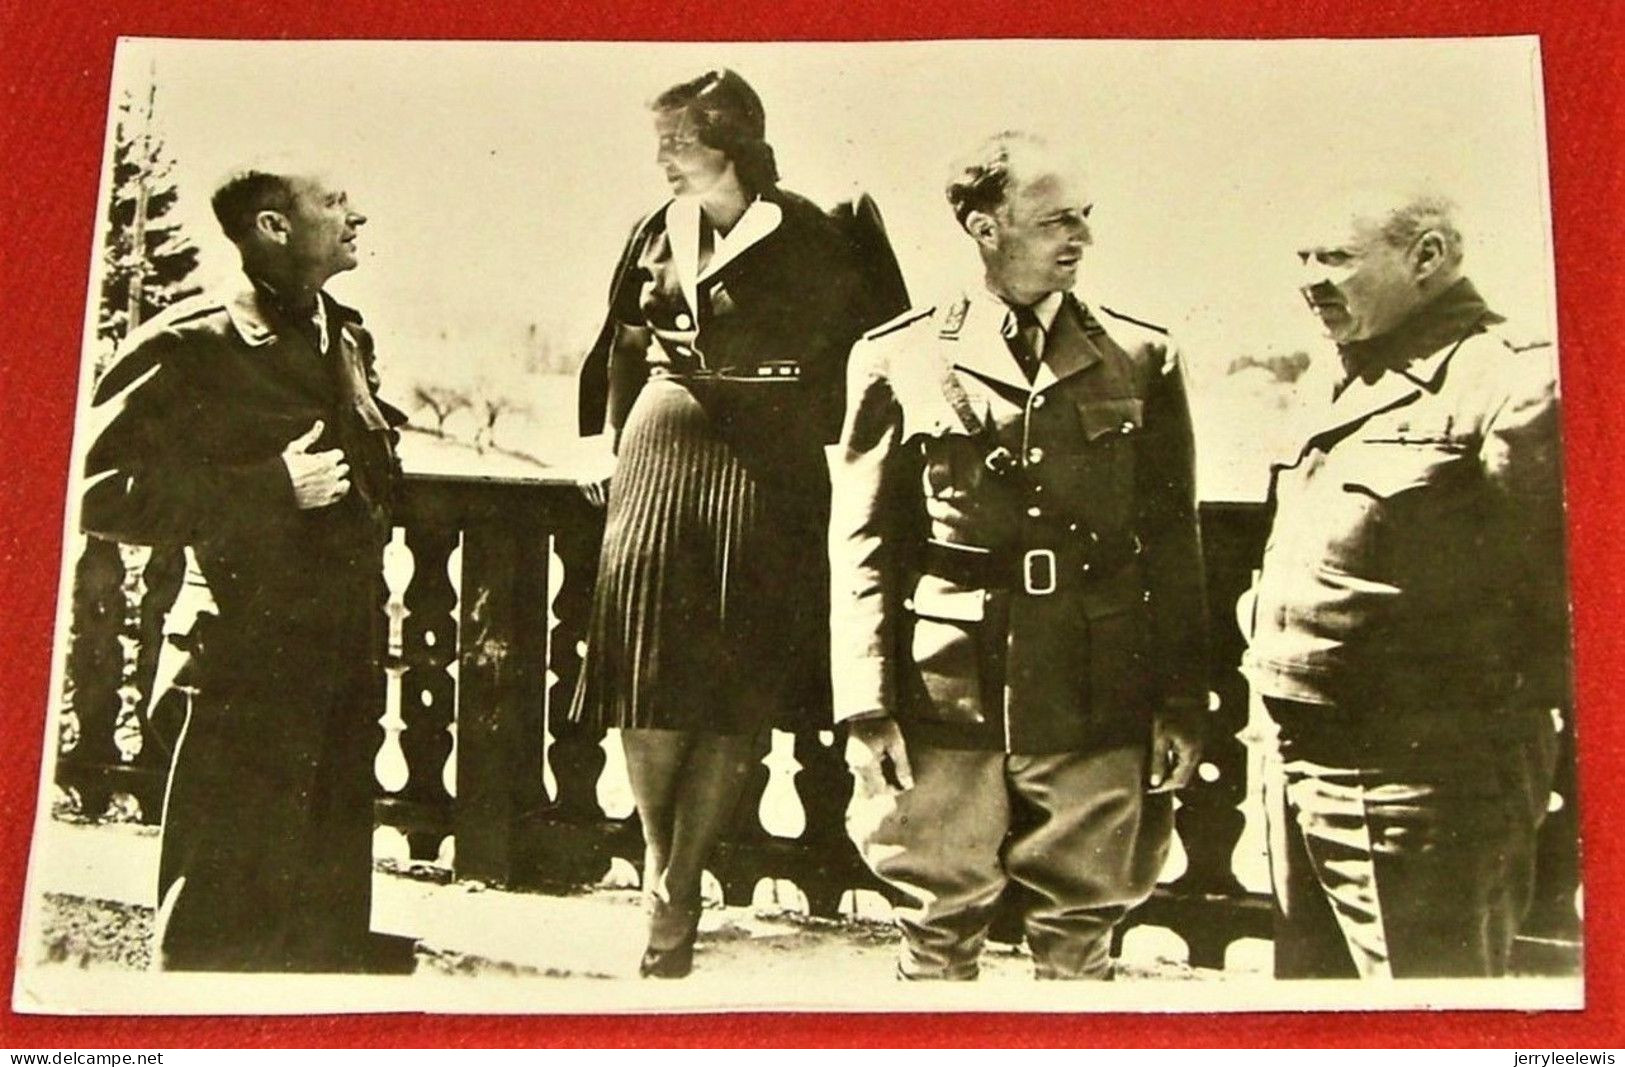 Le Roi Léopold III, La Princesse De Réthy Et Les Généraux Patch Et Haislip, Le 13 Mai 1945 à Strobl (Autriche) - Royal Families